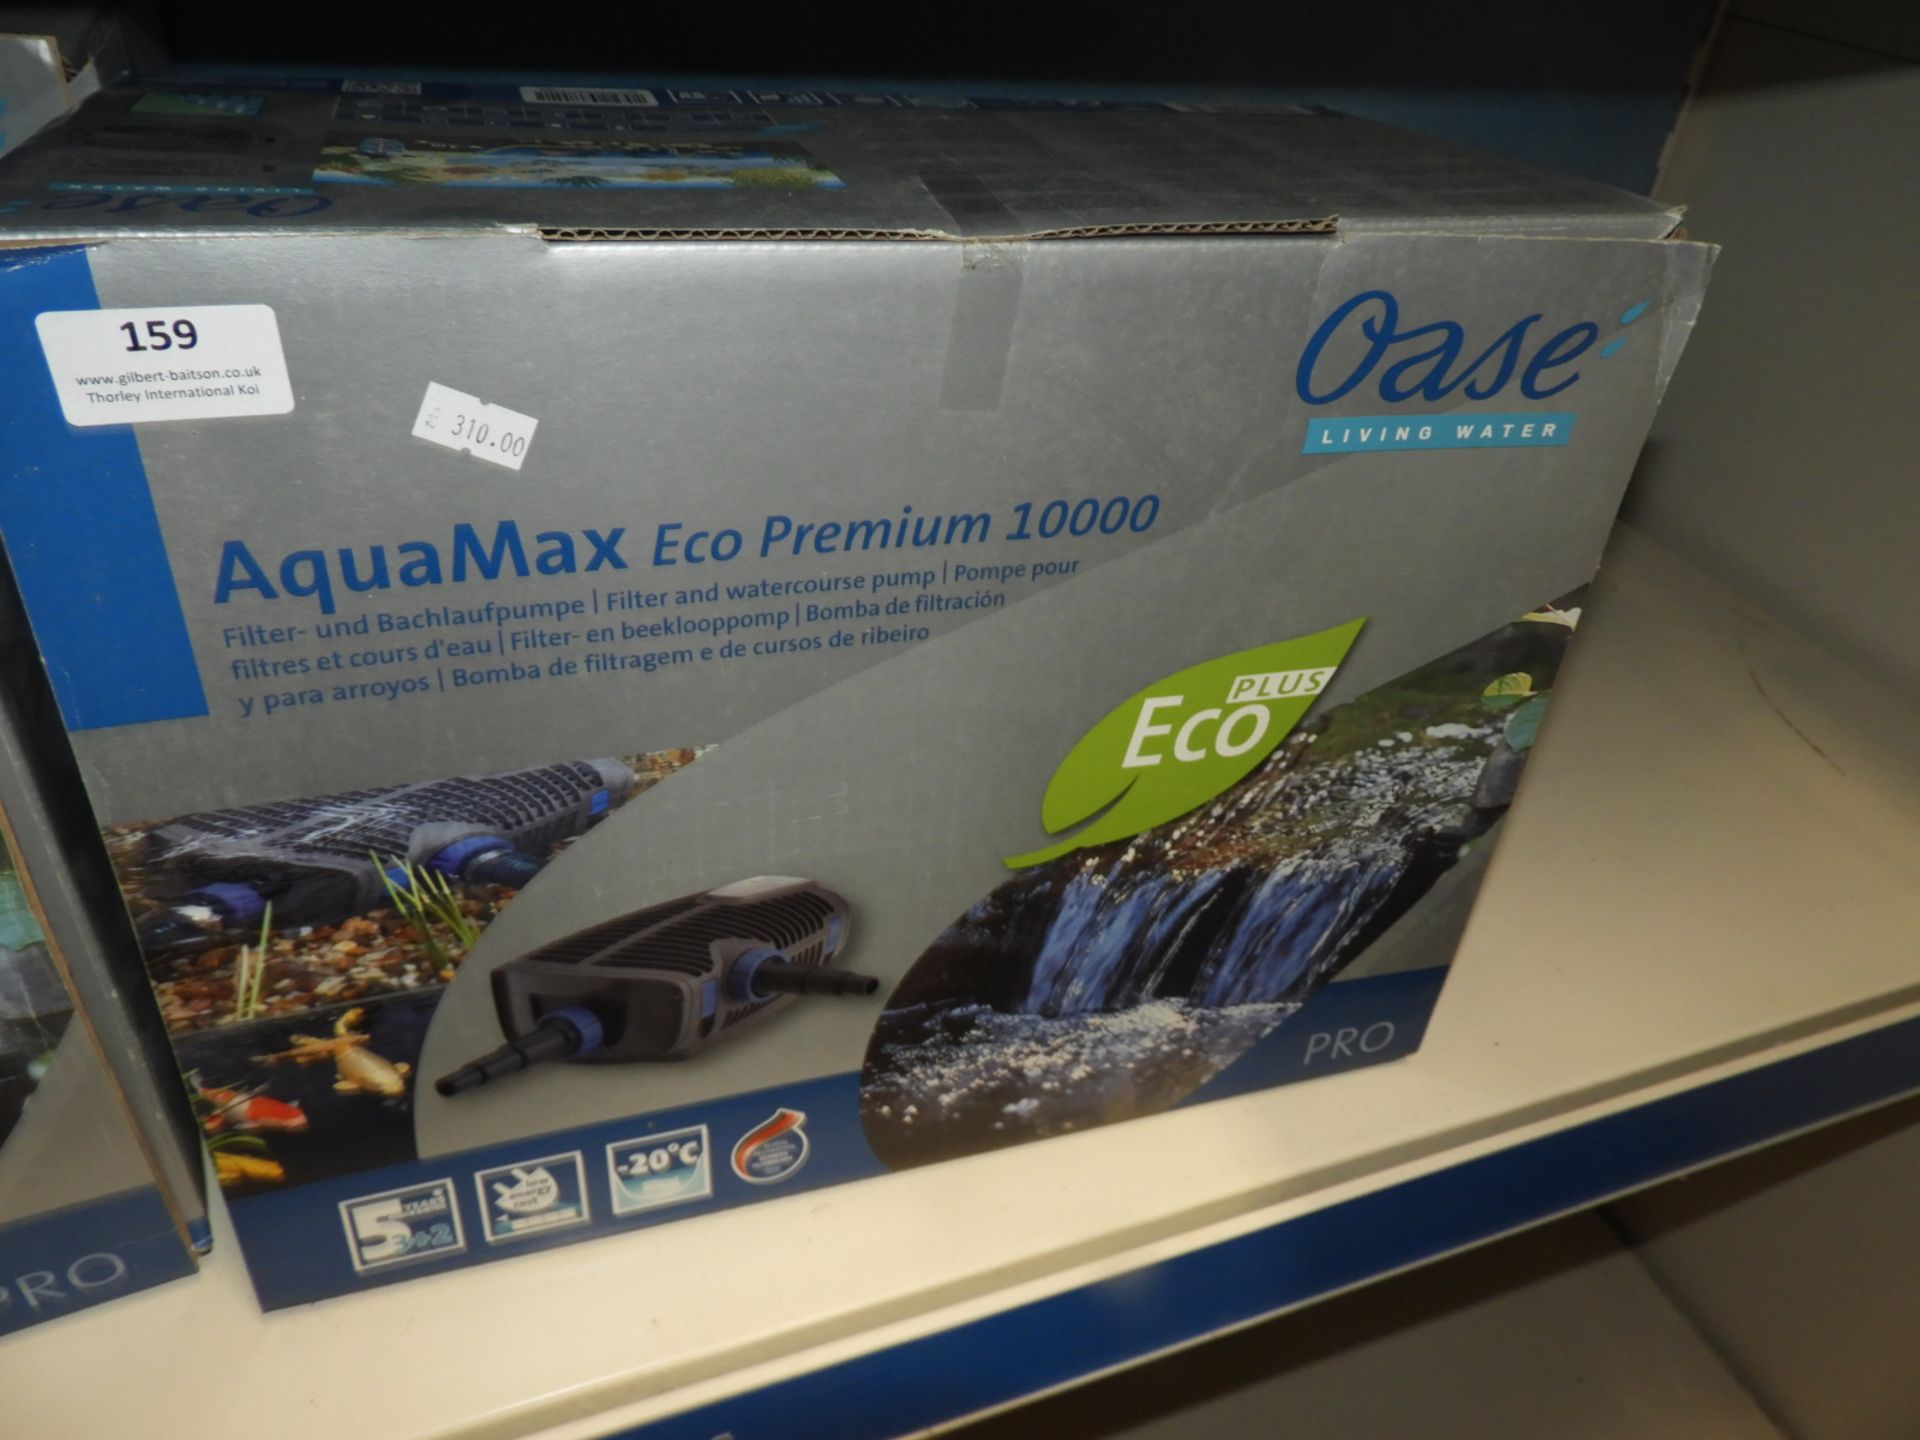 *Oase Aquamax Eco Premium 10000